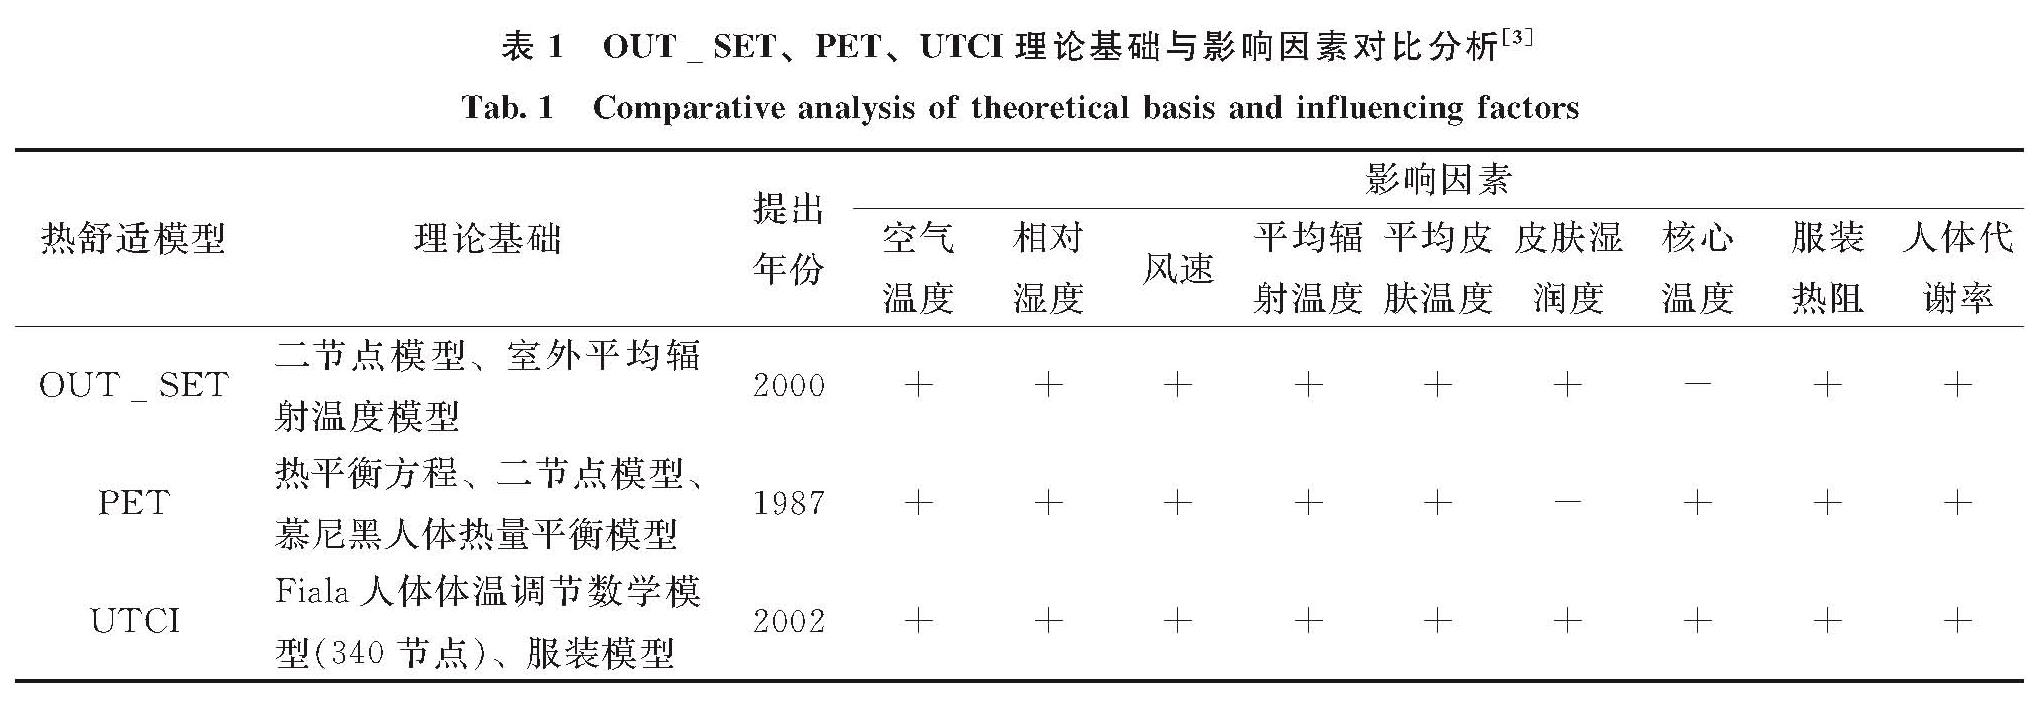 表1 OUT_SET、PET、UTCI理论基础与影响因素对比分析[3]<br/>Tab.1 Comparative analysis of theoretical basis and influencing factors